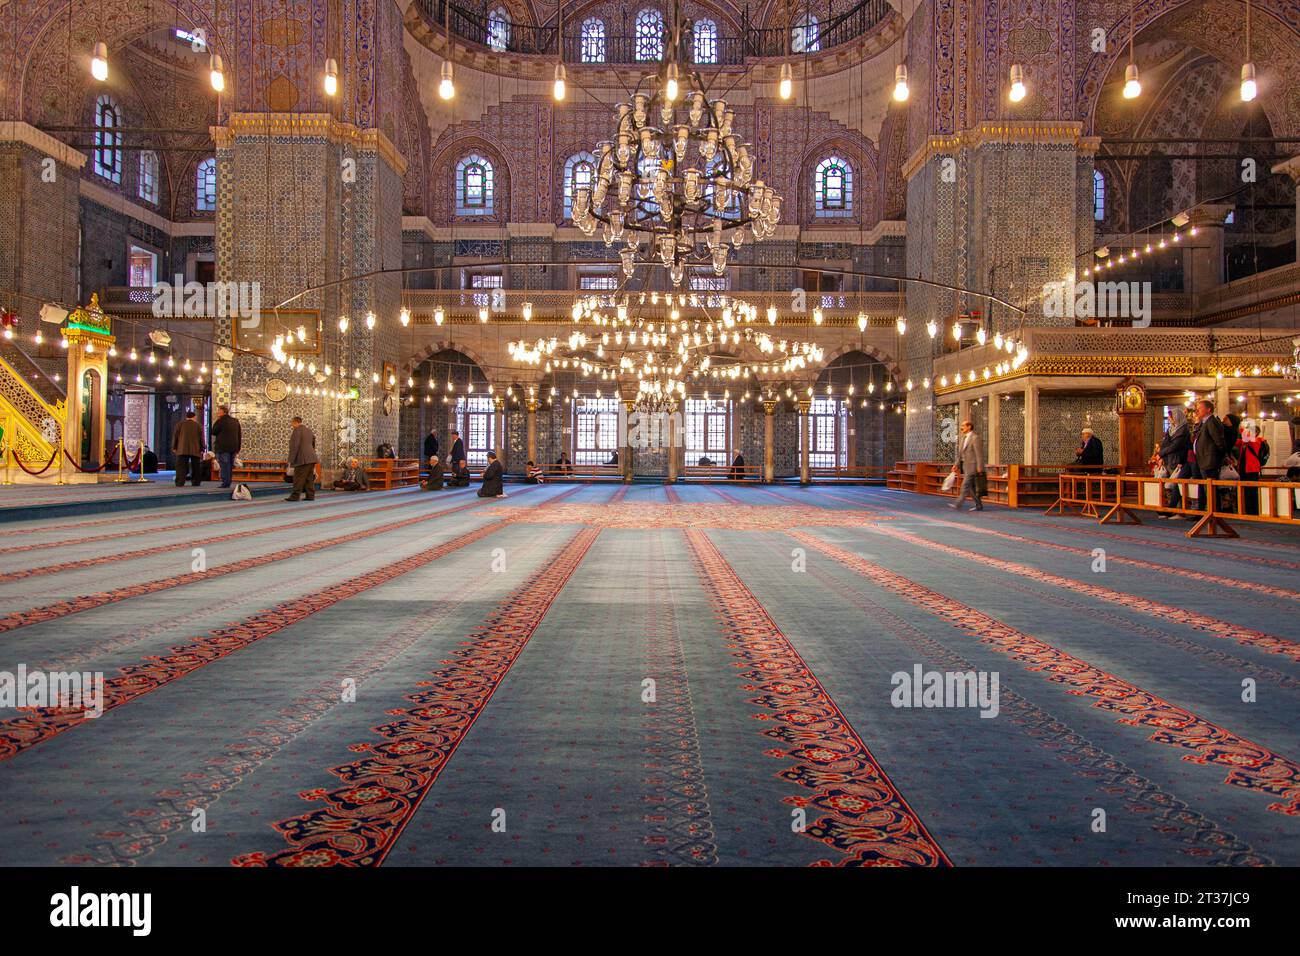 Persone che pregano all'interno della Moschea Blu del XVII secolo illuminata, una storica moschea imperiale dell'epoca ottomana situata a Istanbul, Turchia Foto Stock